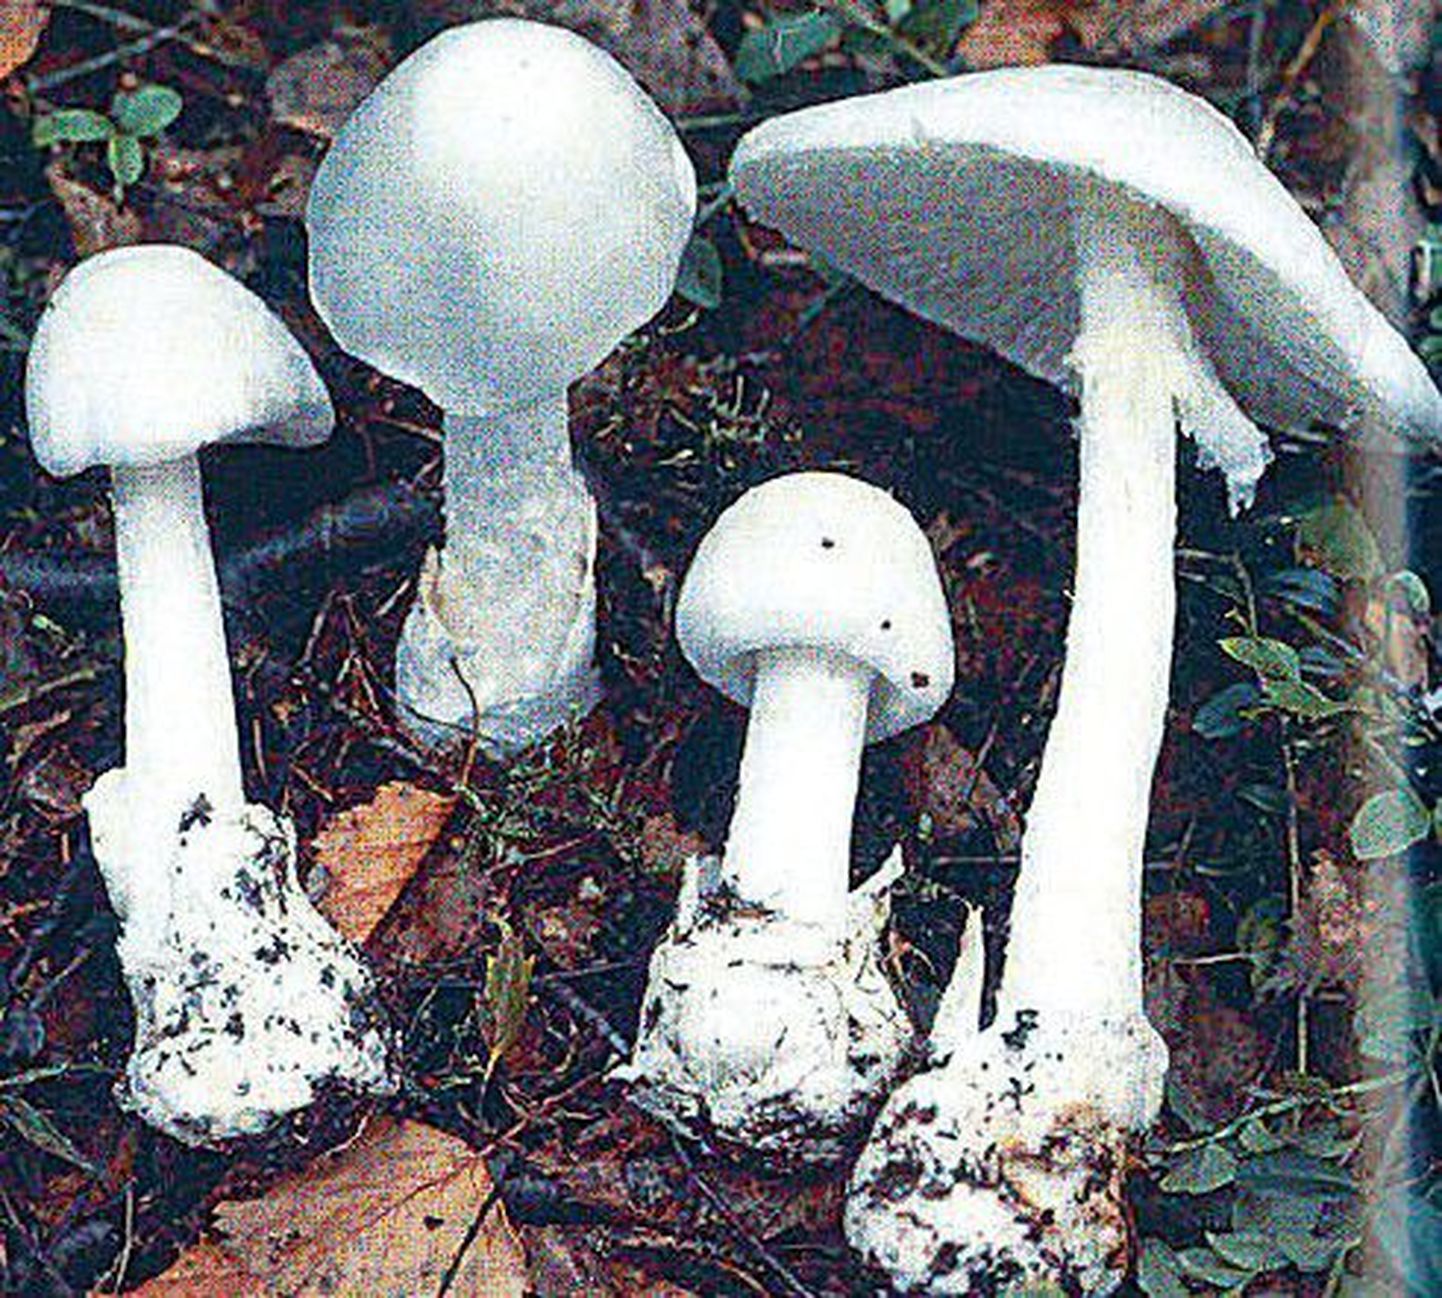 В Эстонии свыше 200 видов грибов, ядовитых в той или иной степени. Смертельно ядовитыми из них являются, например, белая поганка, или мухомор вонючий (сверху), паутинник (внизу слева) и бледная поганка, или зеленый мухомор (внизу справа). Ядовитым грибом считается также свинушка (в центре).